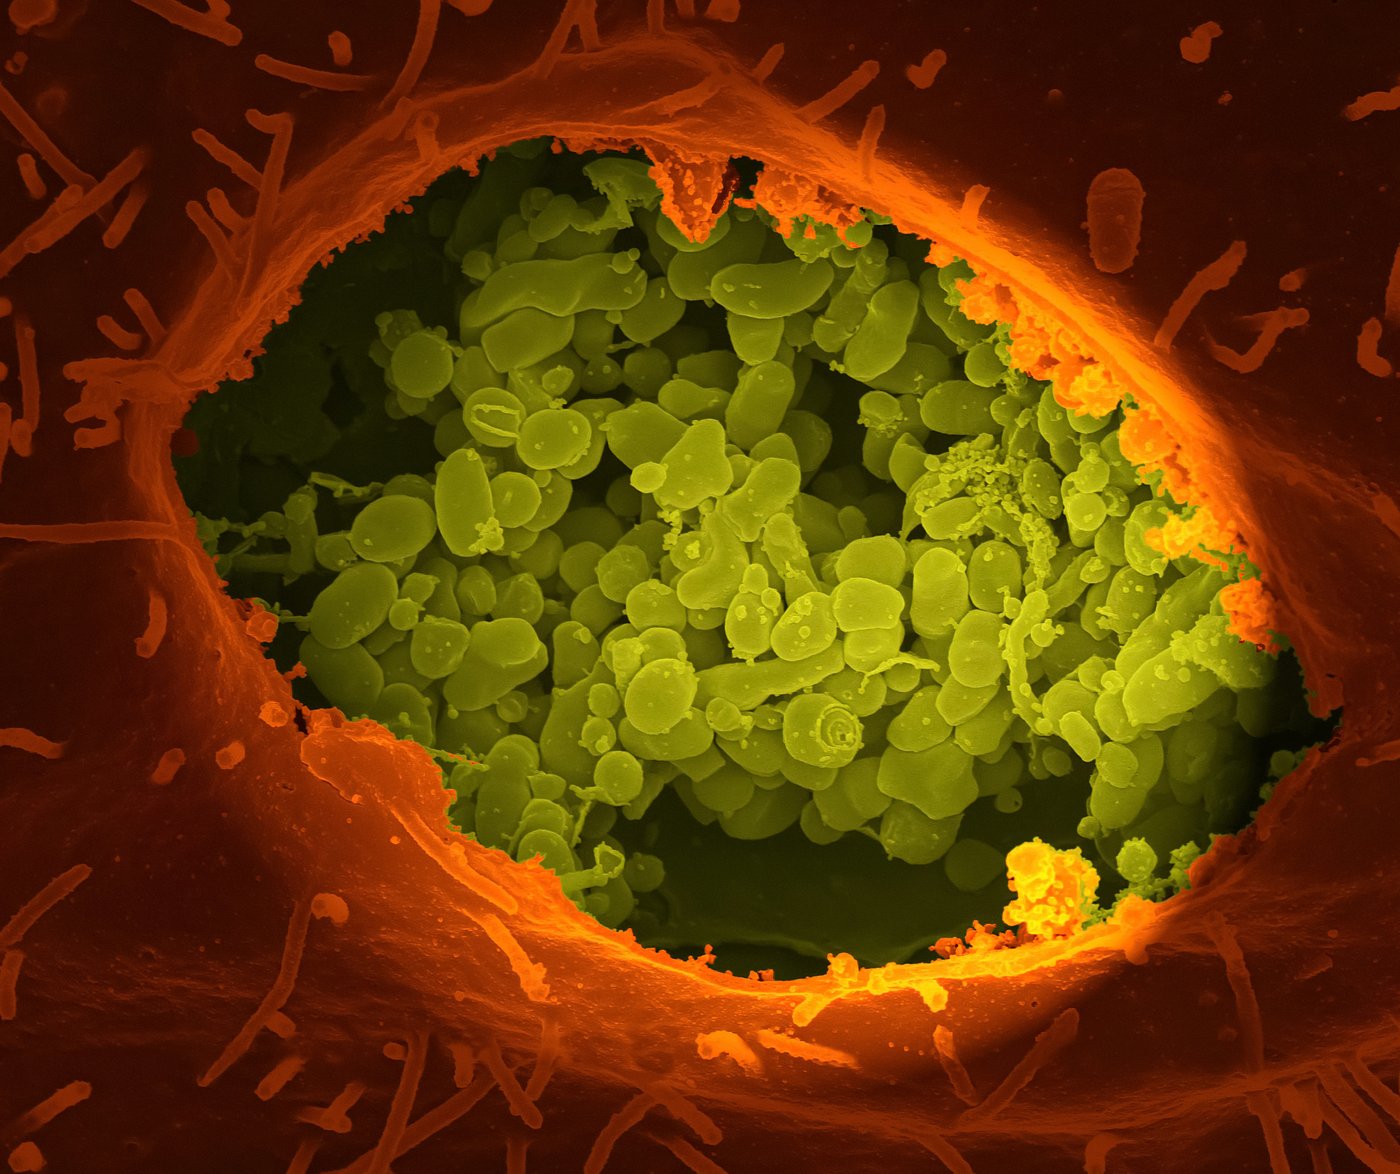 Nachgefärbte rasterelektronenmikroskopische Aufnahme einer geplatzten Zelle mit Coxiellen: Eine rötlich-orange Zellöffnung, darin viele kleinere hellgrüne Kugeln.